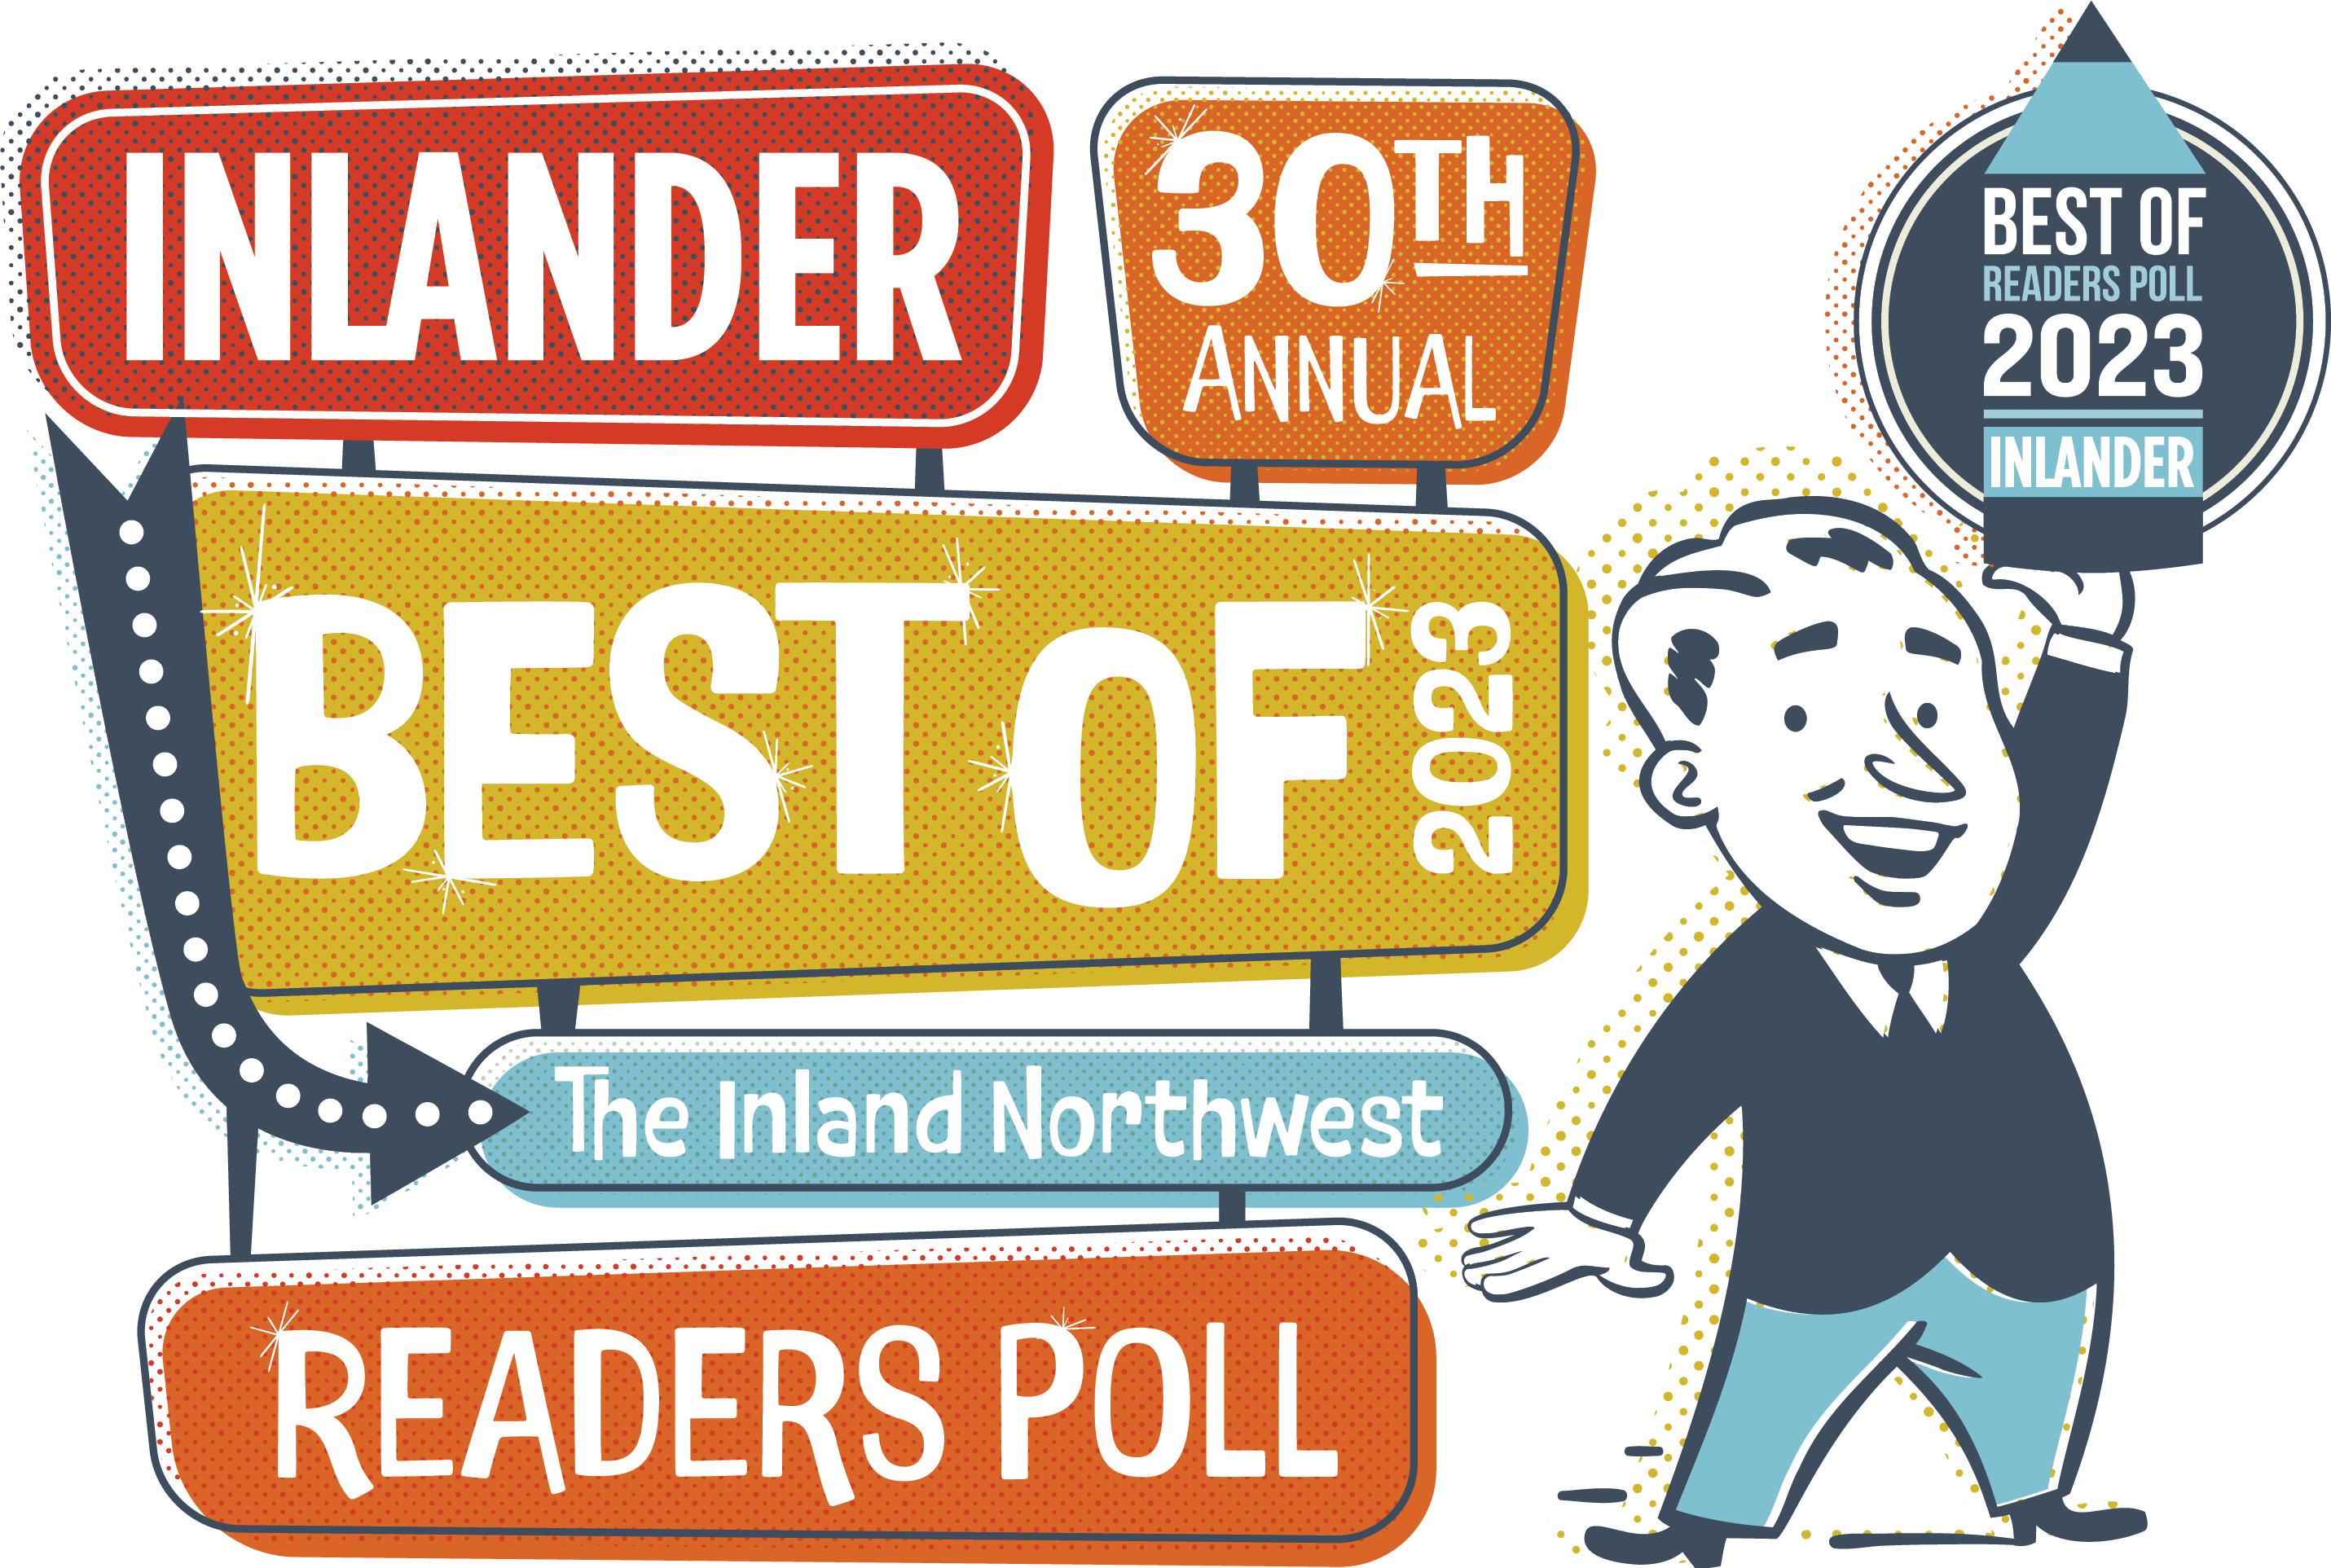 Inlander's Best of the Inland Northwest Readers Poll